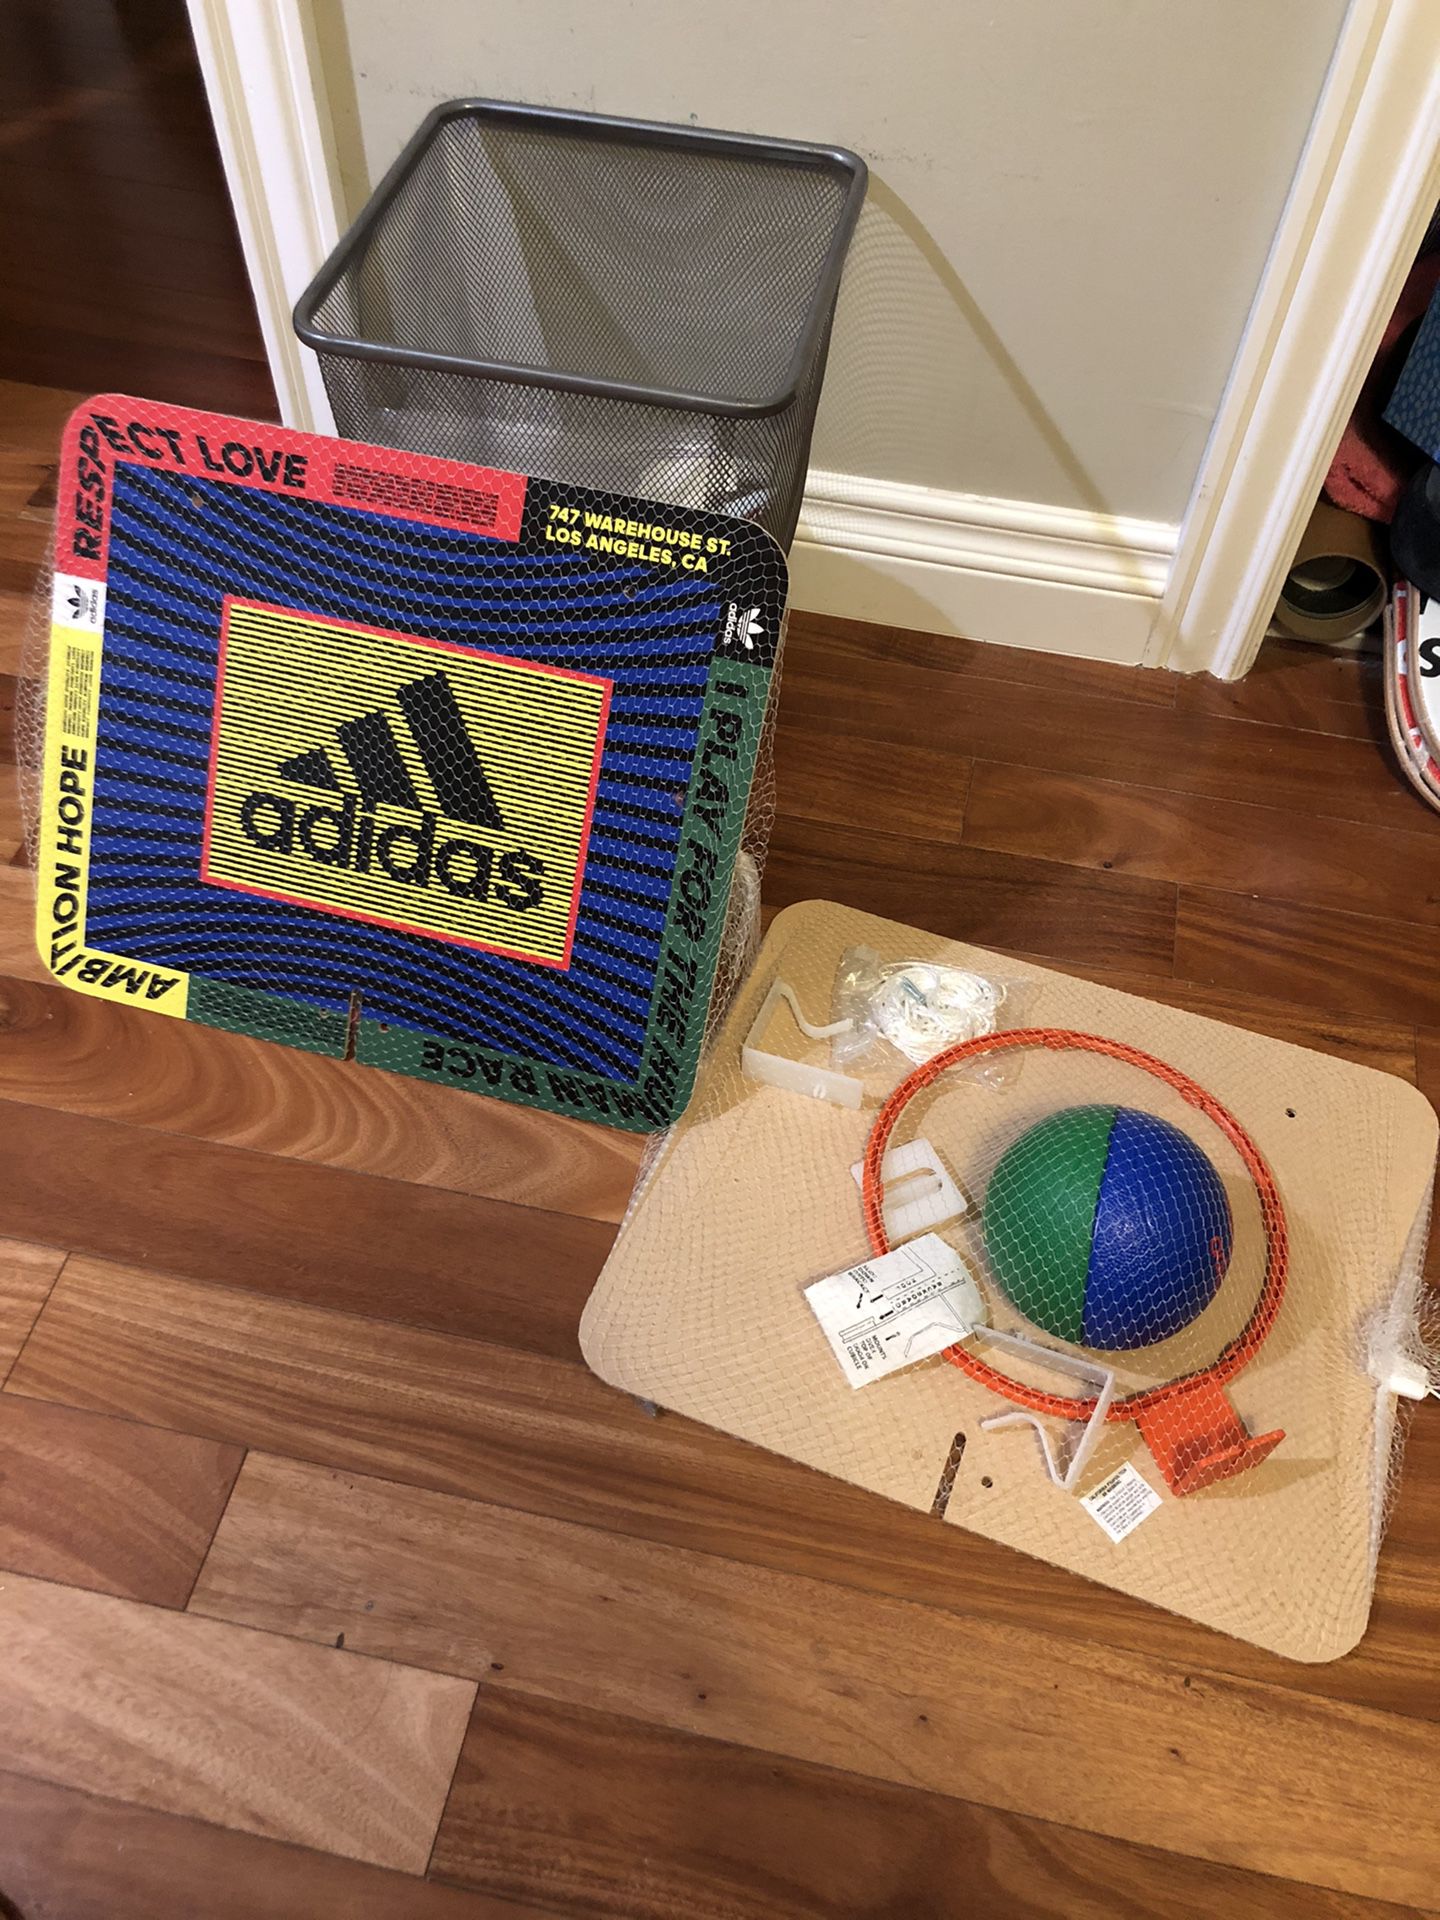 Adidas mini basketball hoop 2018 NBA ASG in LA